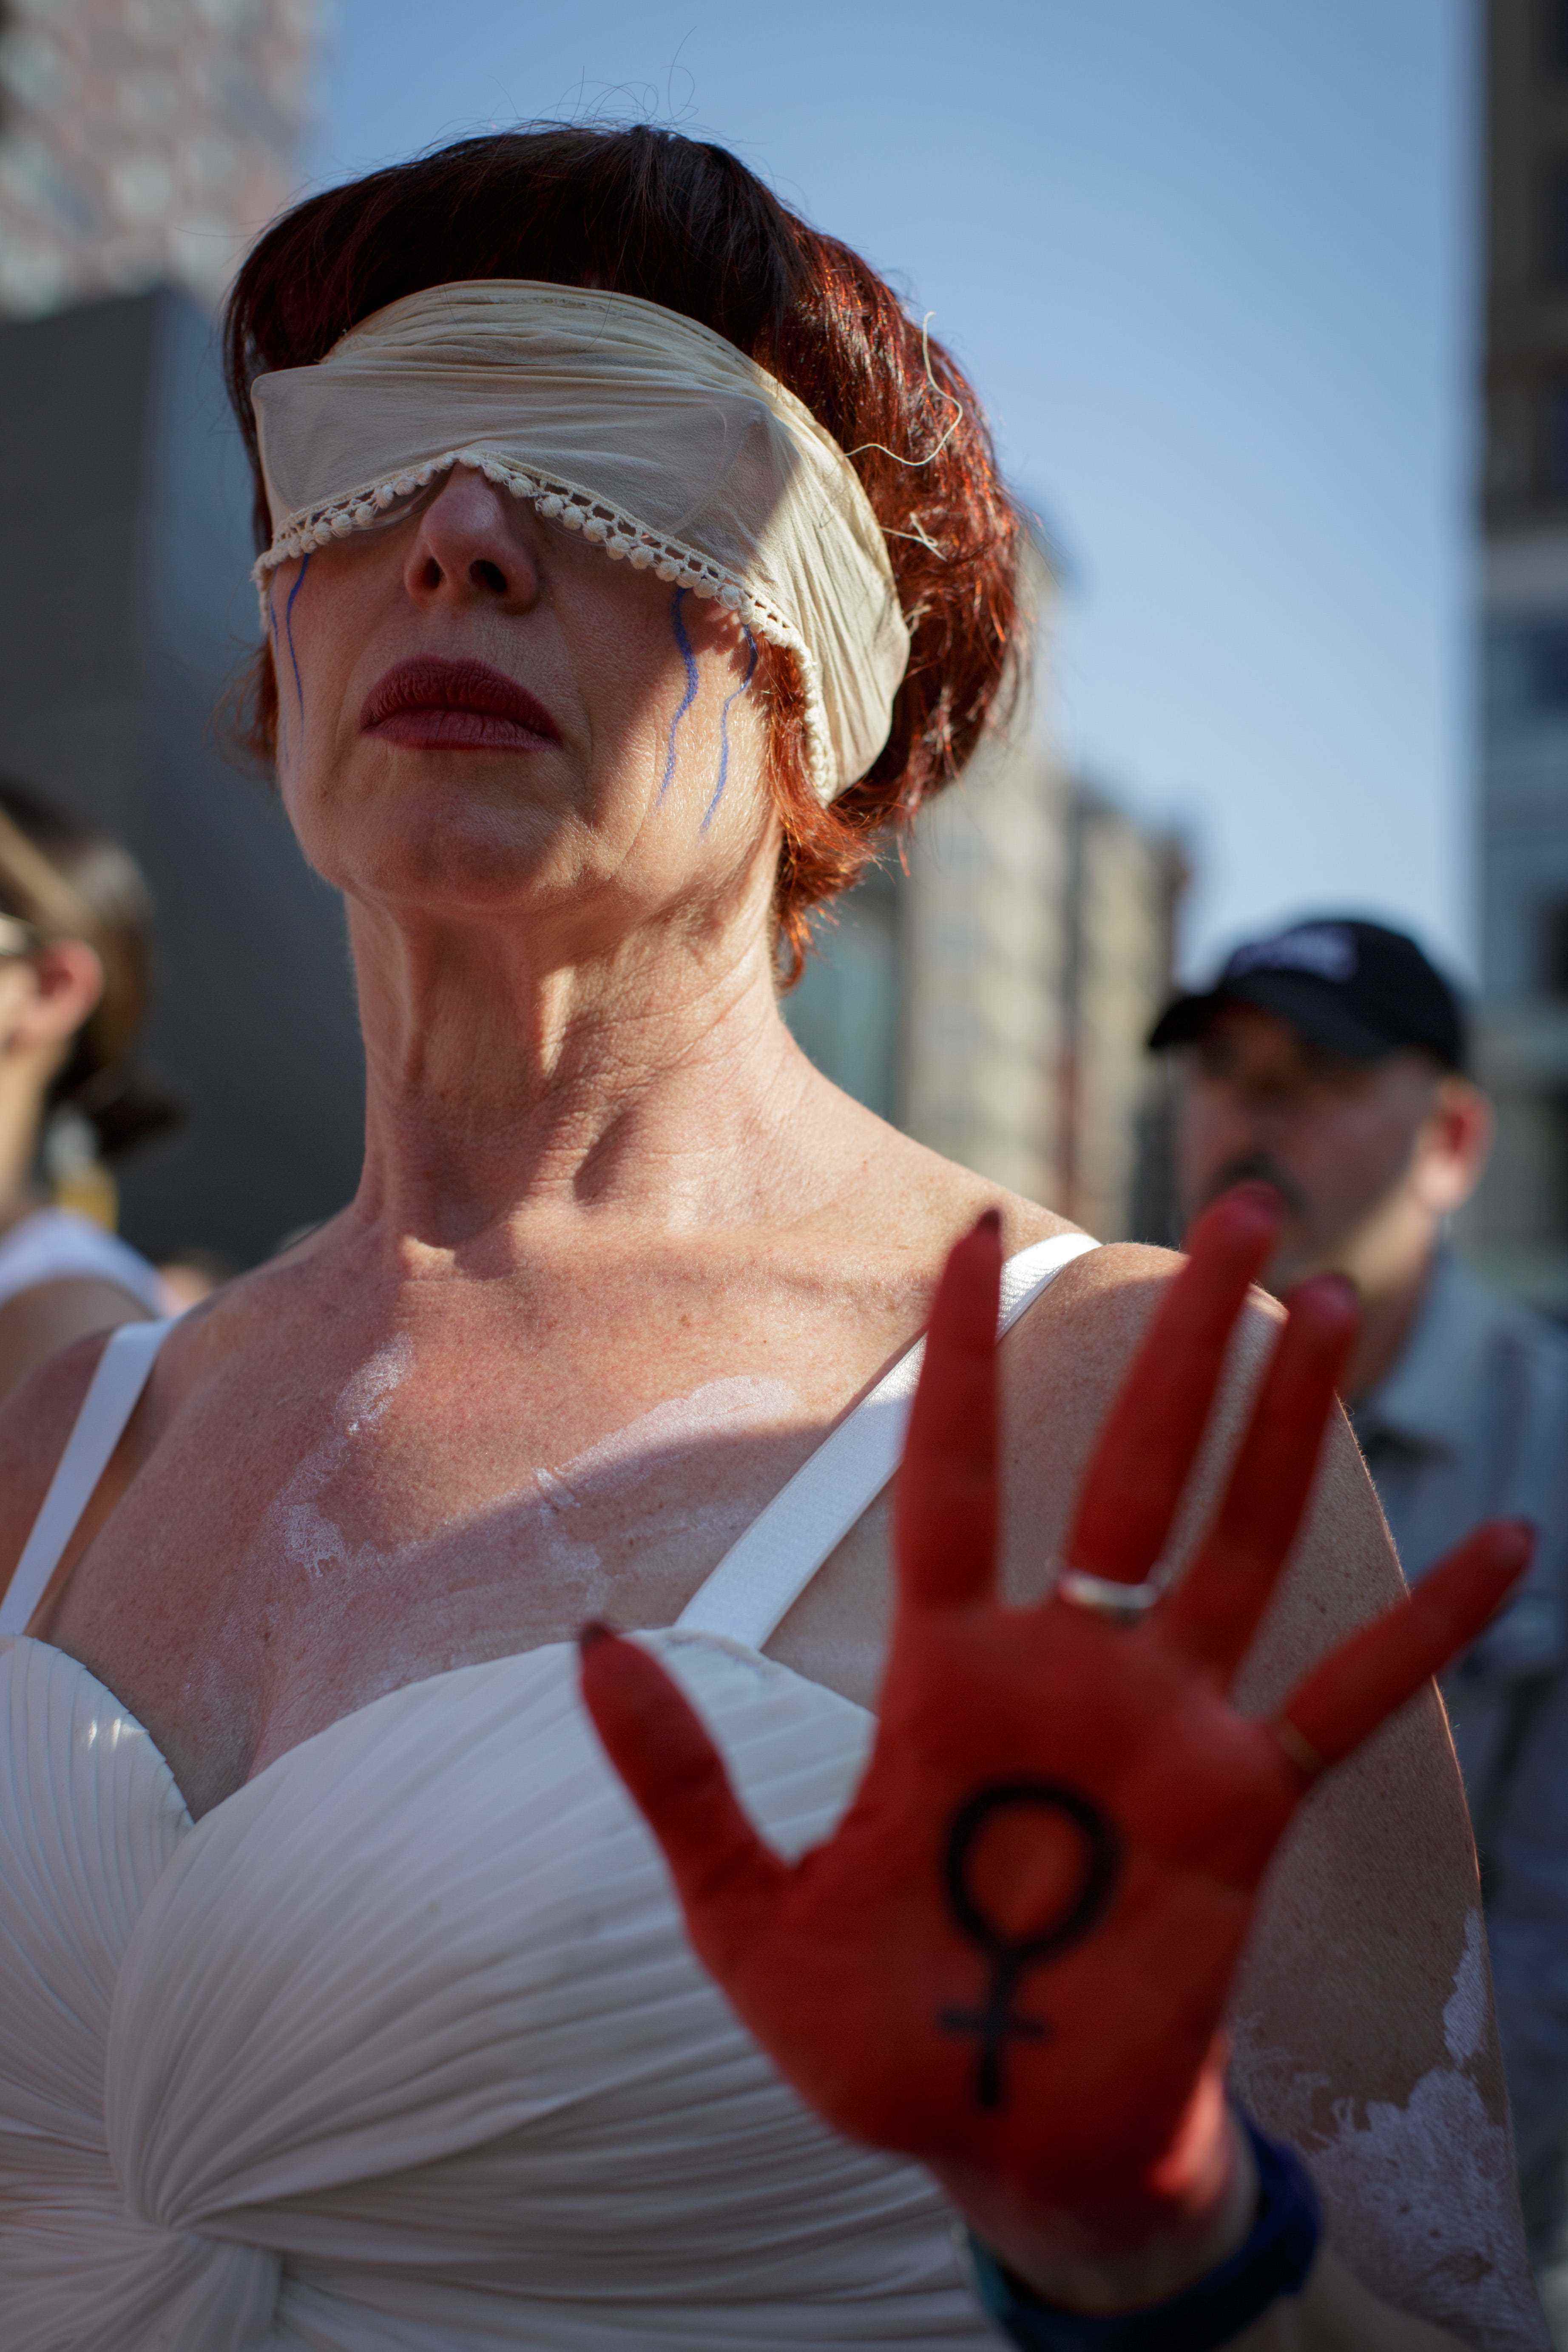 Eine Frau trägt eine Augenbinde und zeigt ihre rot bemalte Hand.